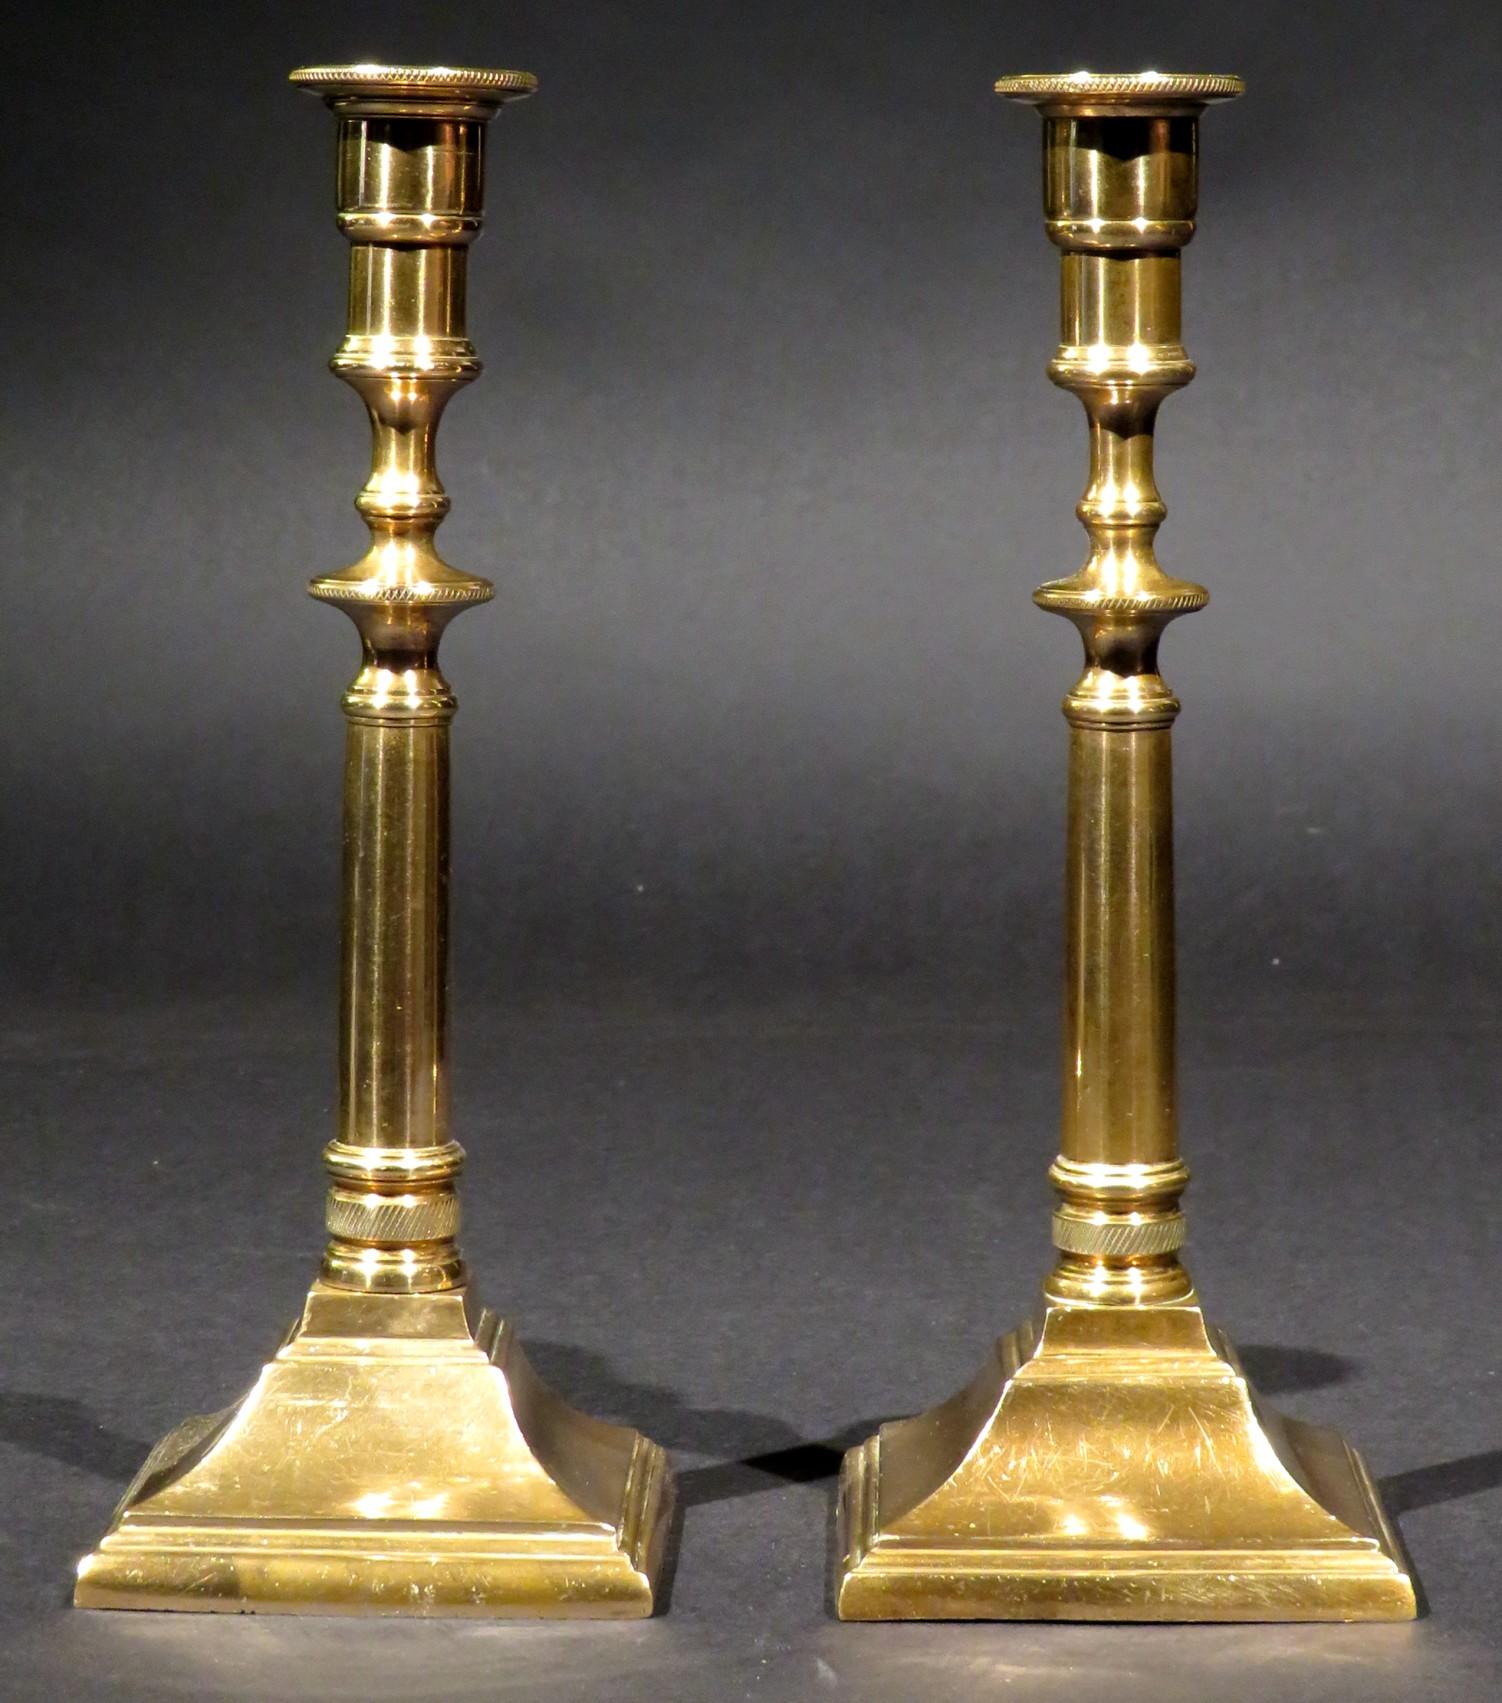 Une très belle et relativement rare paire de chandeliers de campagne en métal moulé du XVIIIe siècle de l'époque géorgienne. Tous deux sont dotés de colonnes en fonte exceptionnellement lourdes et solides se terminant par des poteaux filetés qui